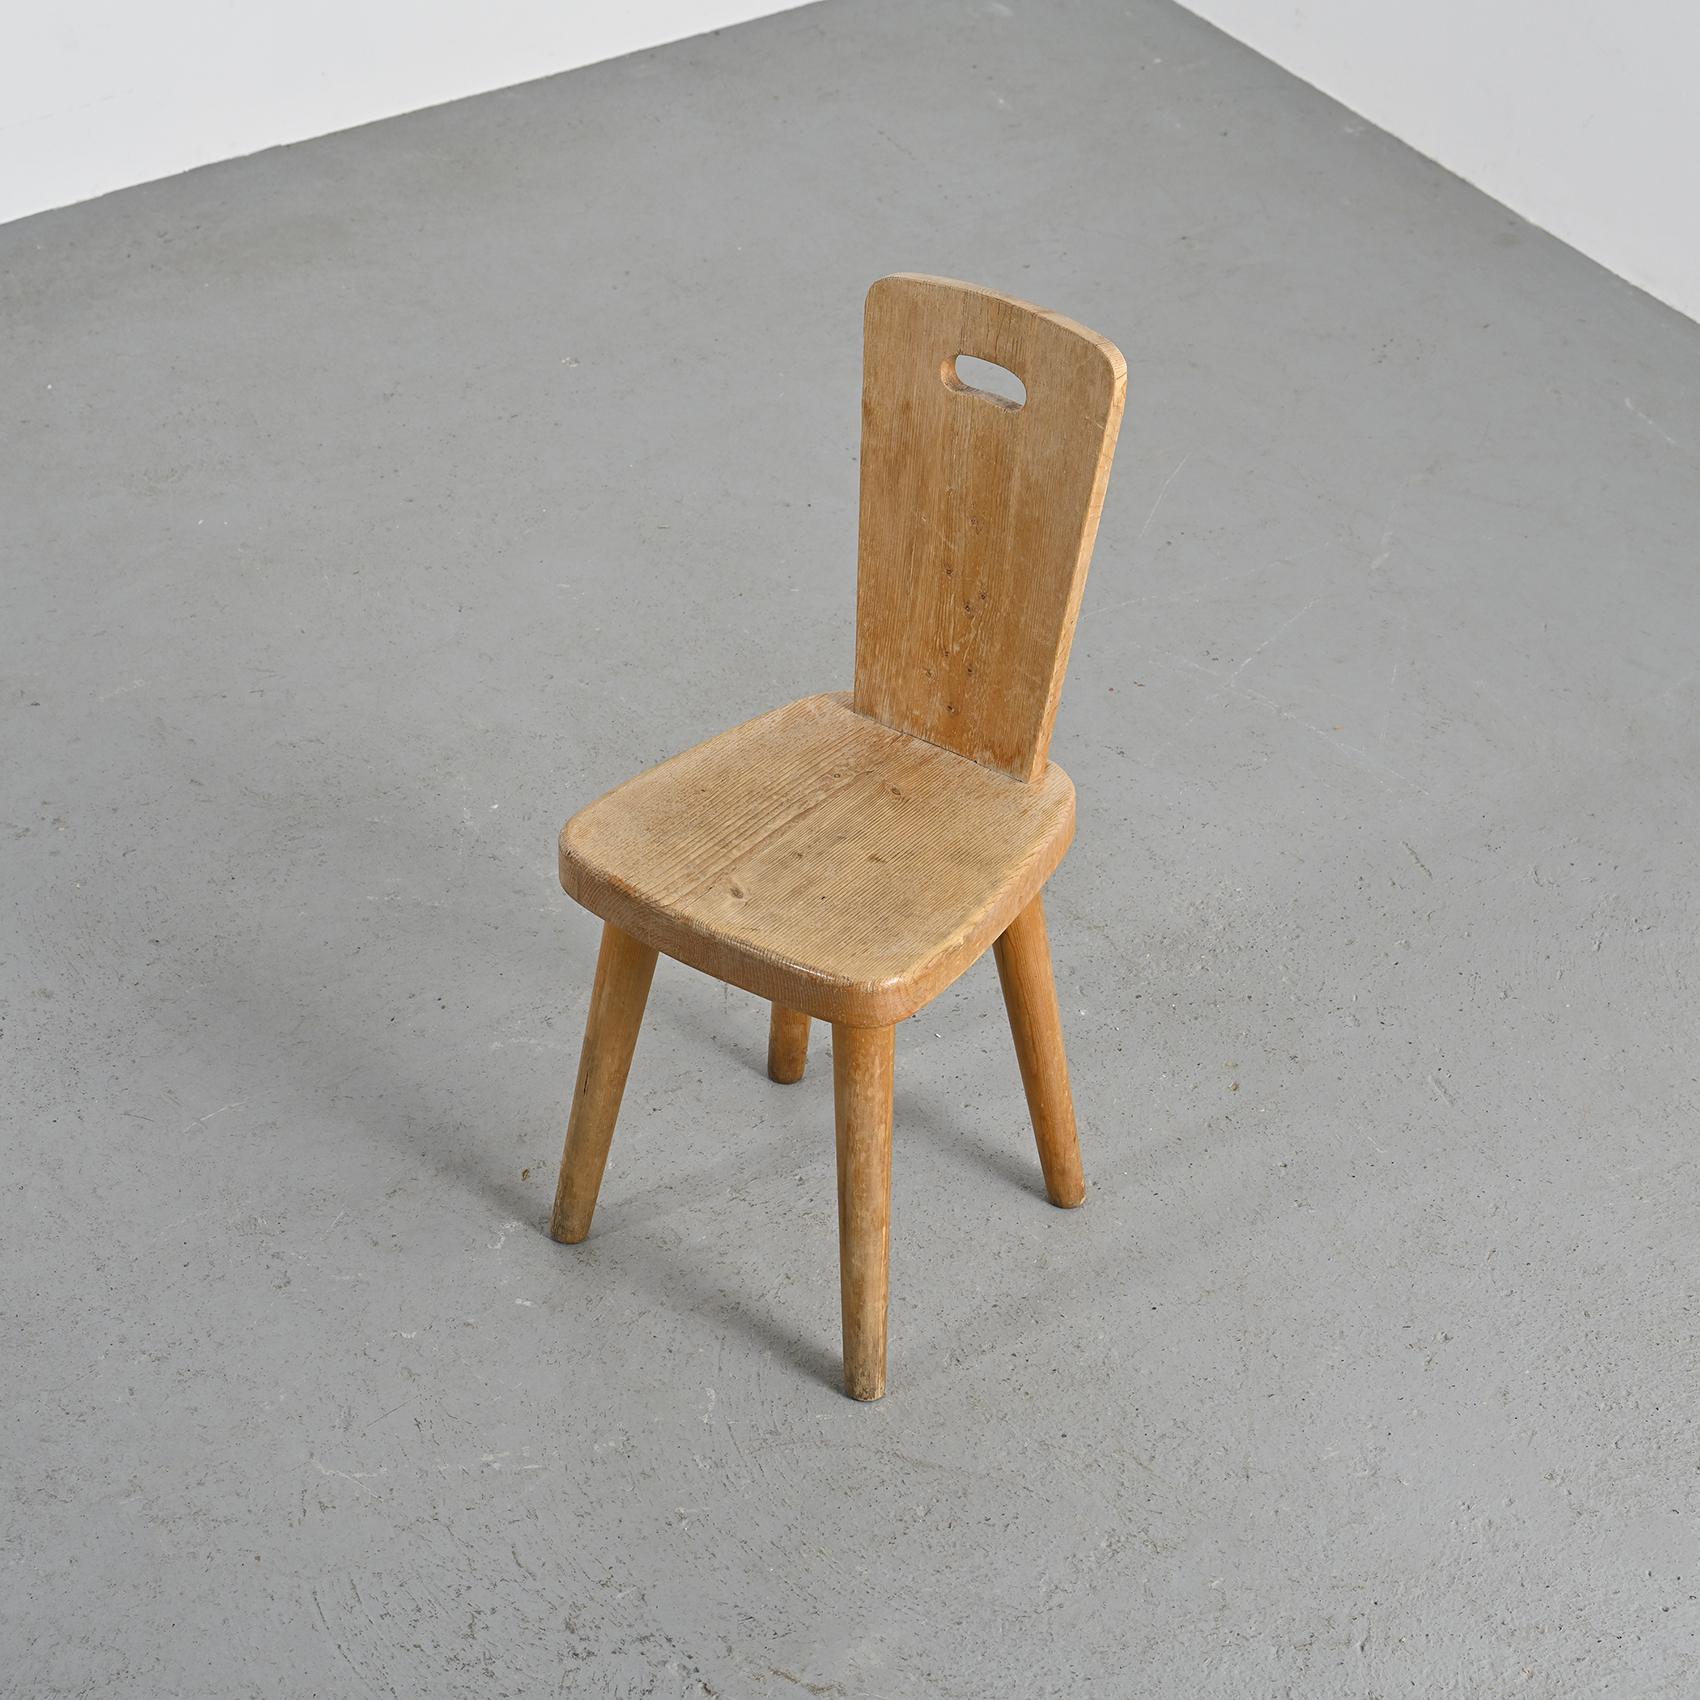 
Chaise conçue par Christian Durupt, célèbre ébéniste français connu pour son partenariat avec Charlotte Perriand.

Fabriqué en pin massif, apprécié pour sa robustesse, il repose sur quatre pieds élégamment fuselés soutenant une assise aux